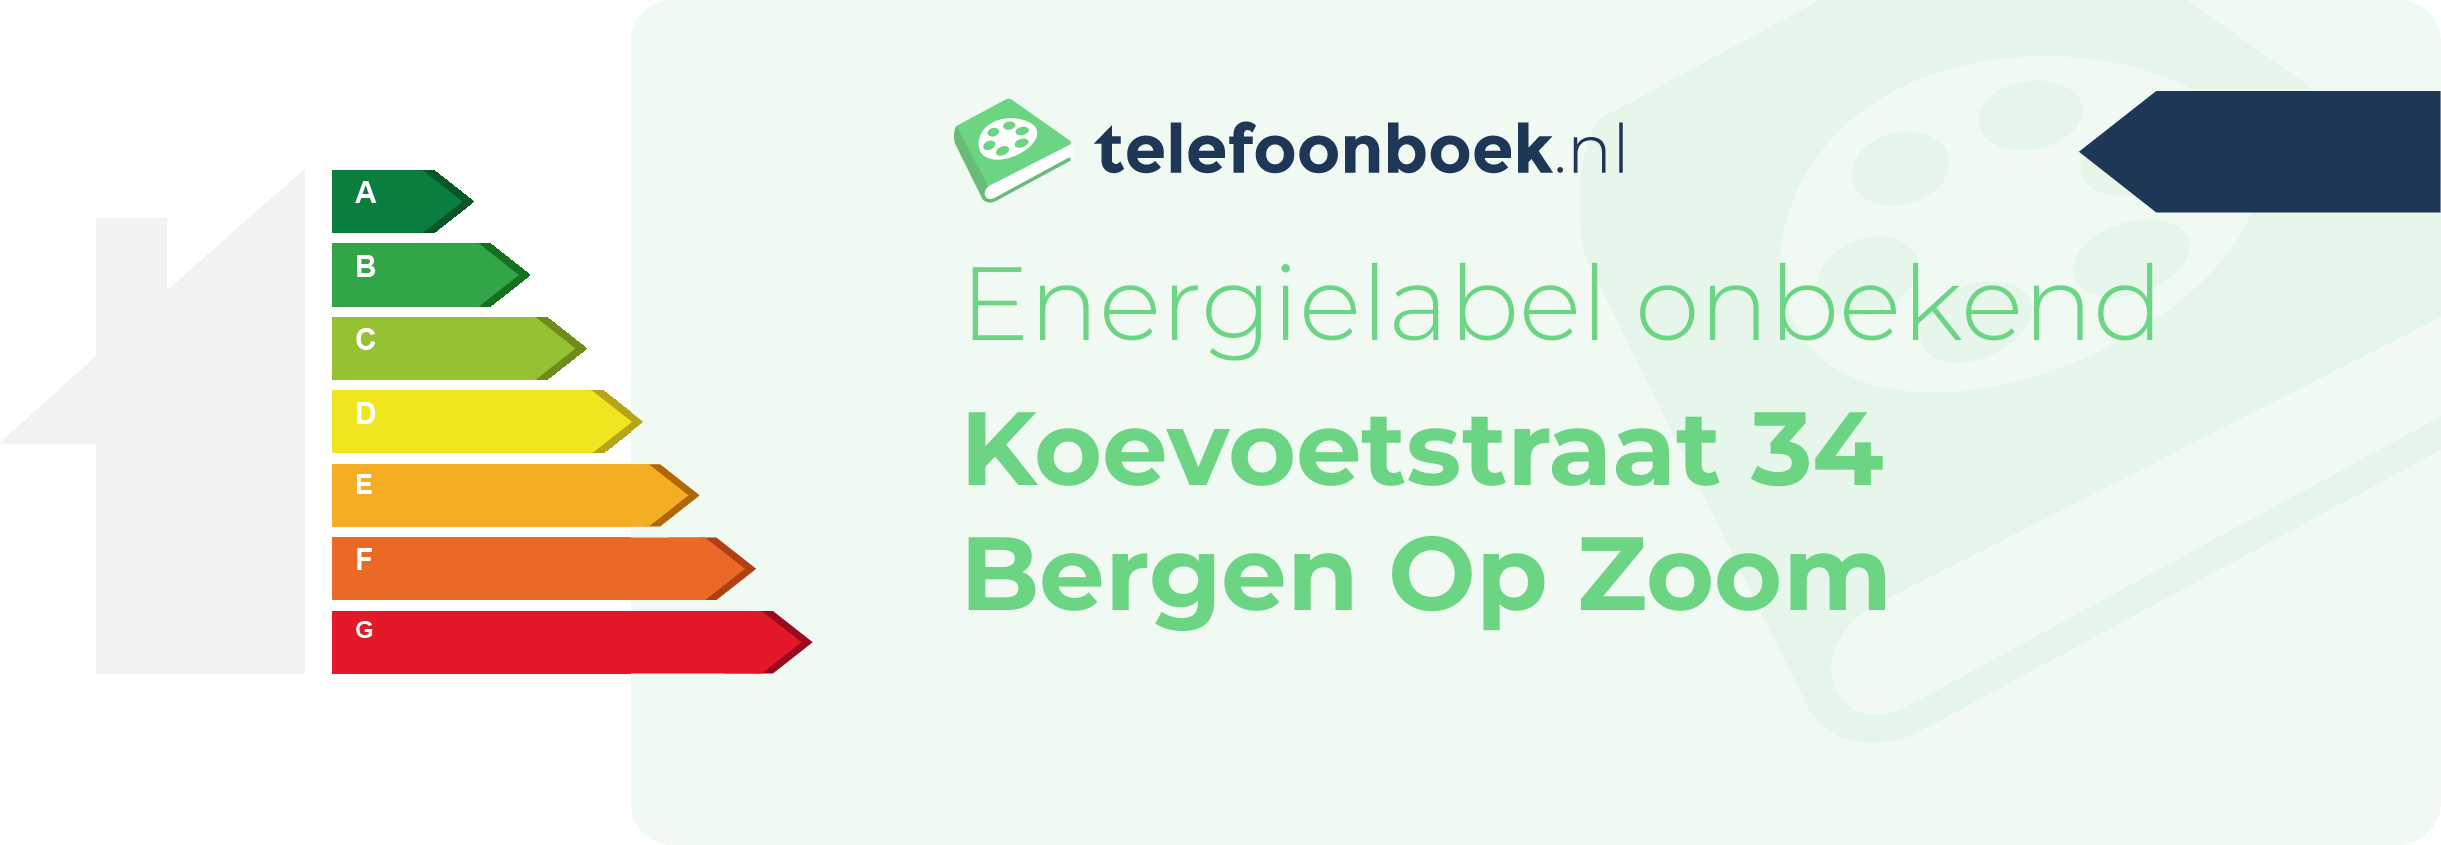 Energielabel Koevoetstraat 34 Bergen Op Zoom